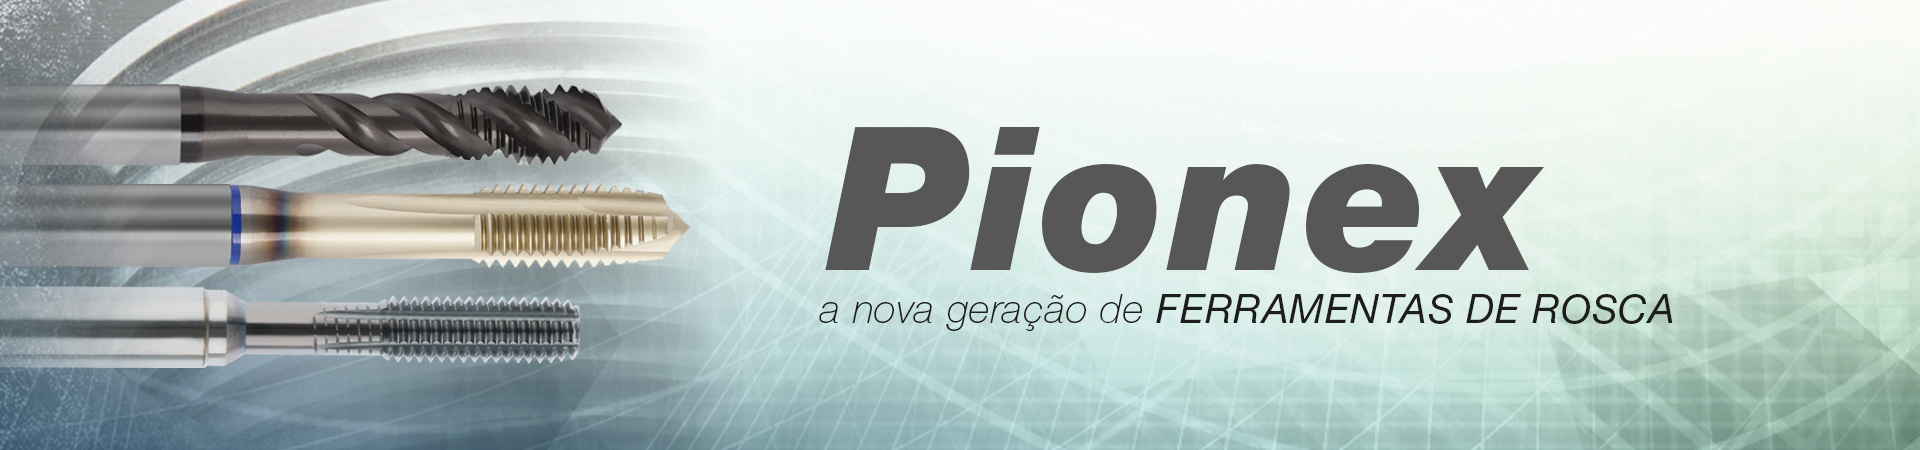 Pionex – a nova geração de FERRAMENTAS DE ROSCA